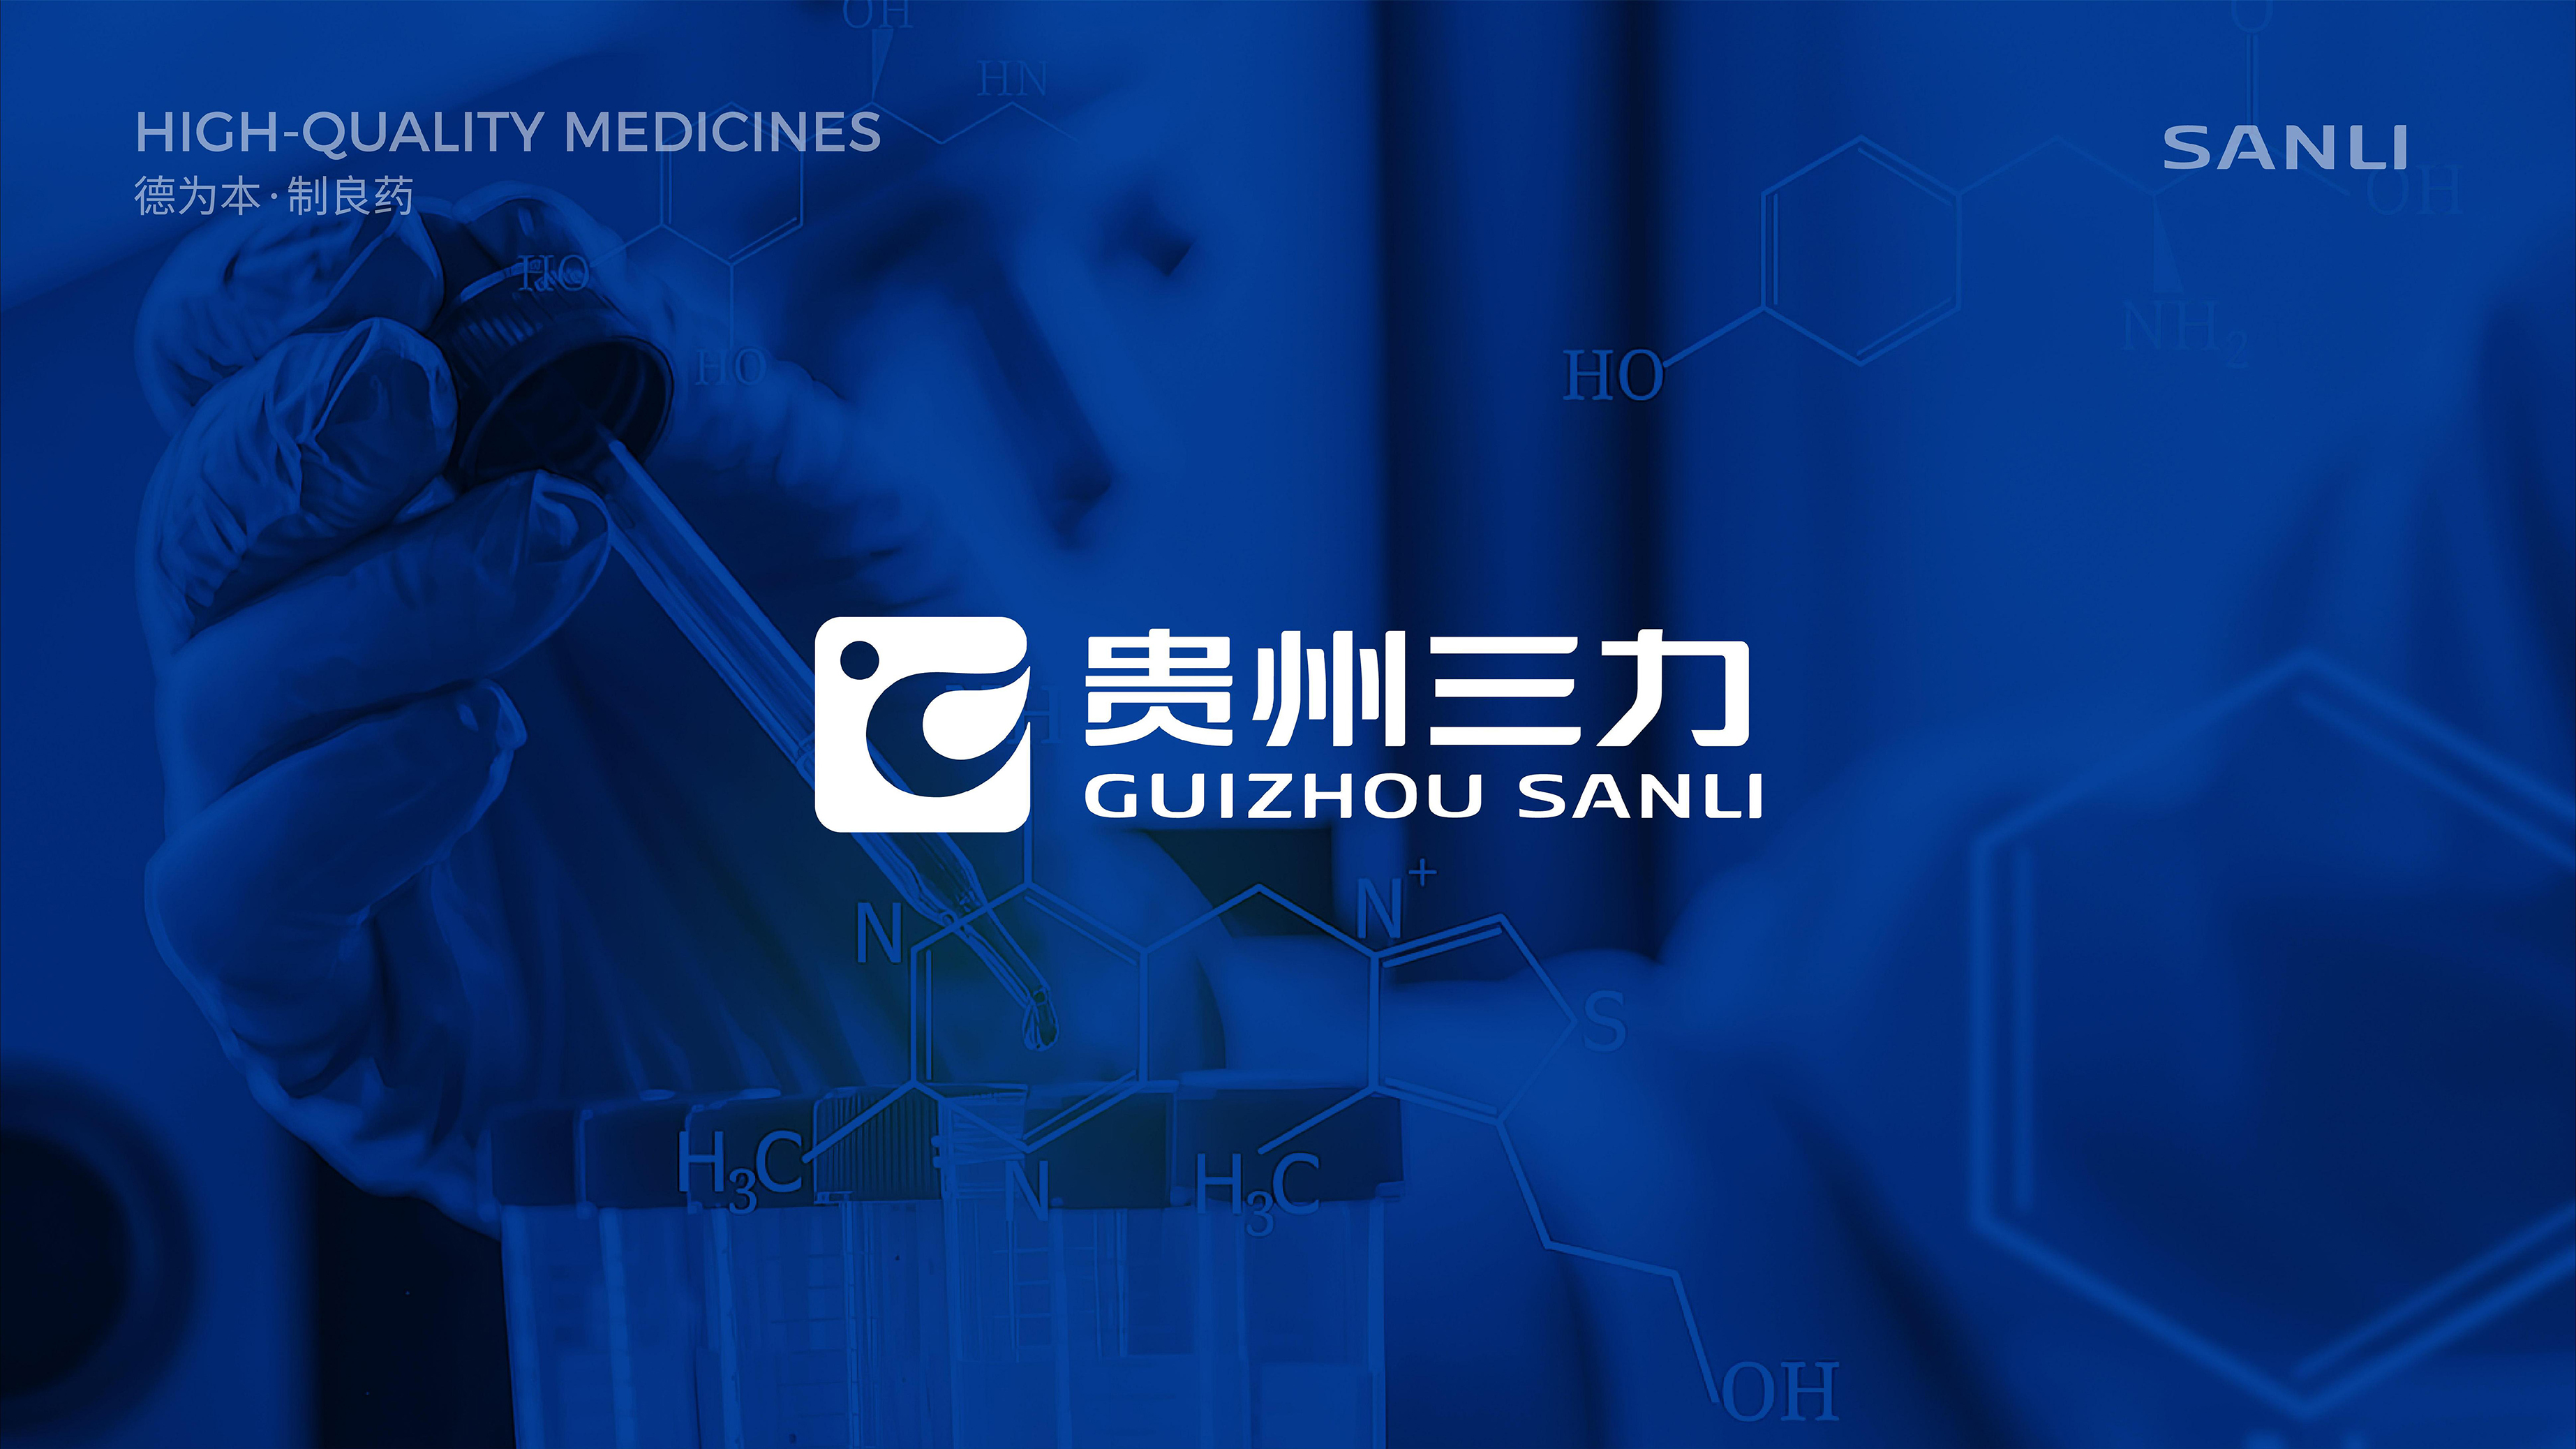 上行案例 /贵州三力制药品牌形象升级